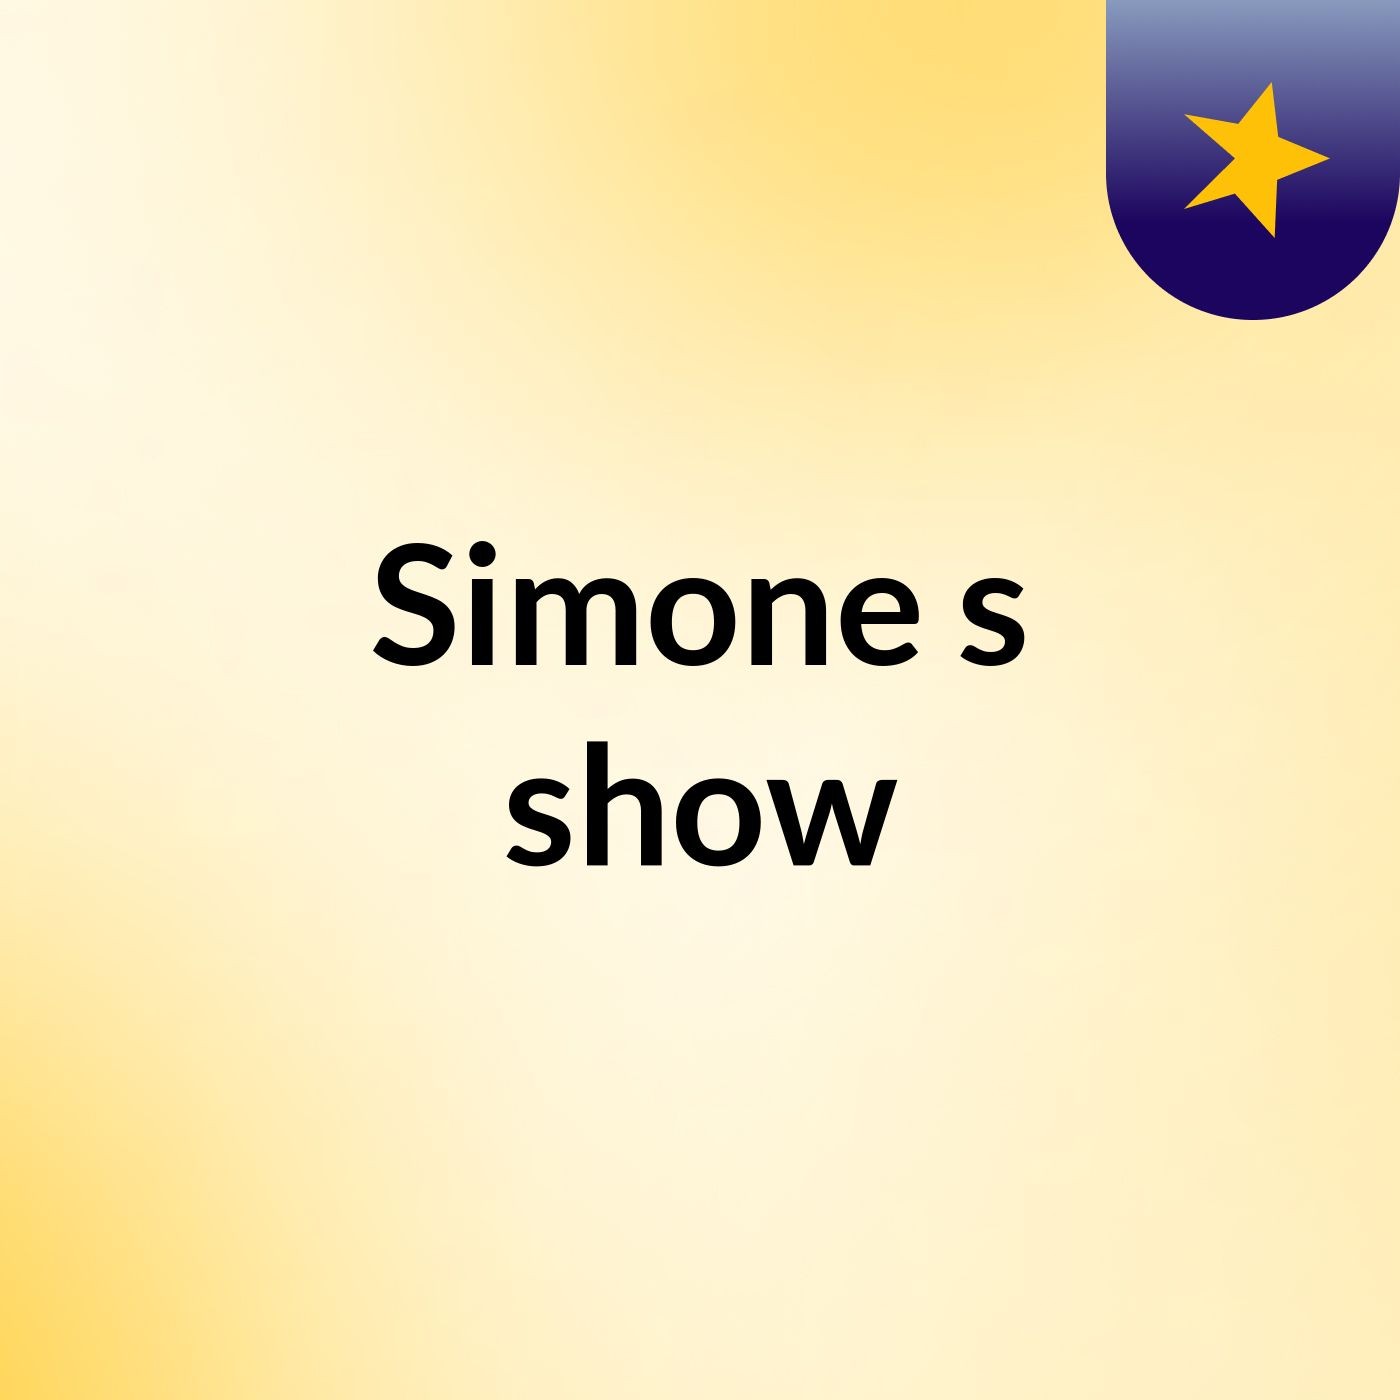 Simone's show